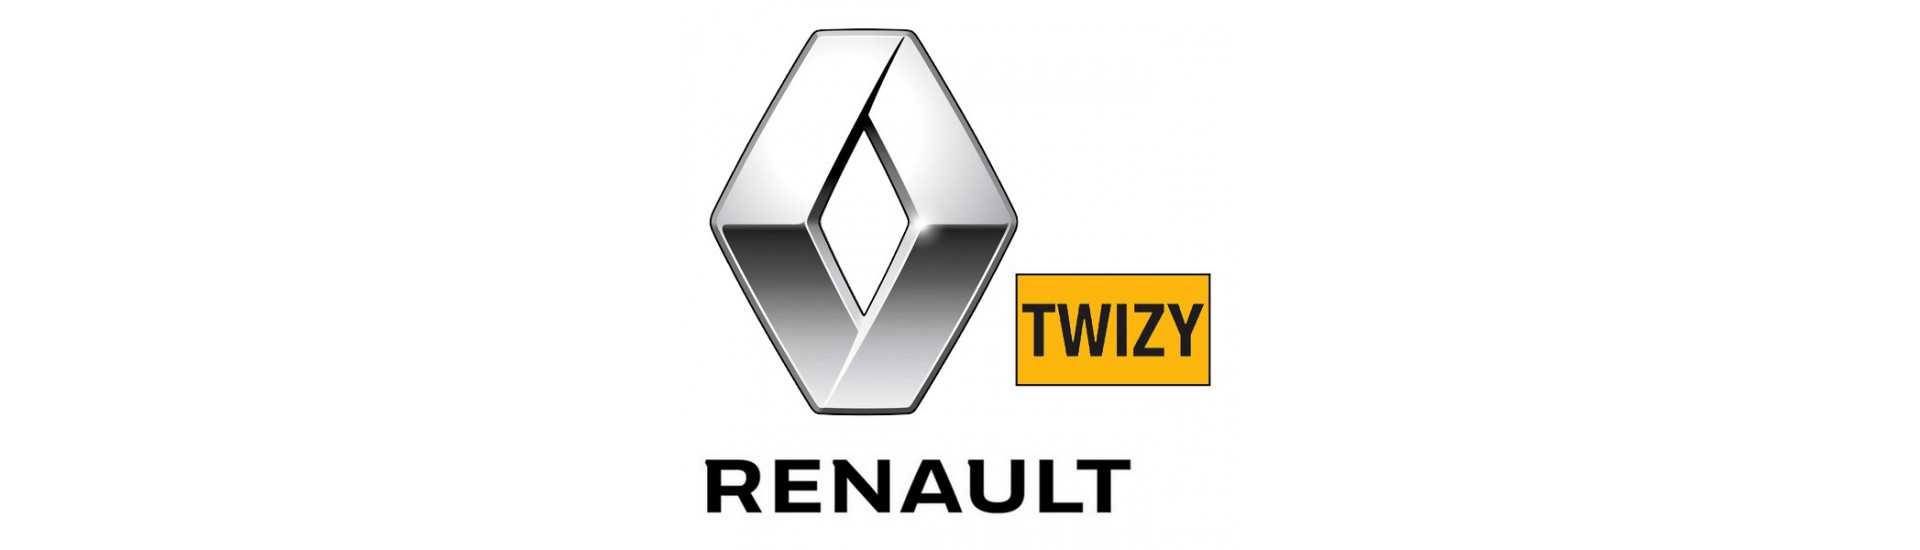 Cardan al miglior prezzo per auto senza permesso Renault Twizy